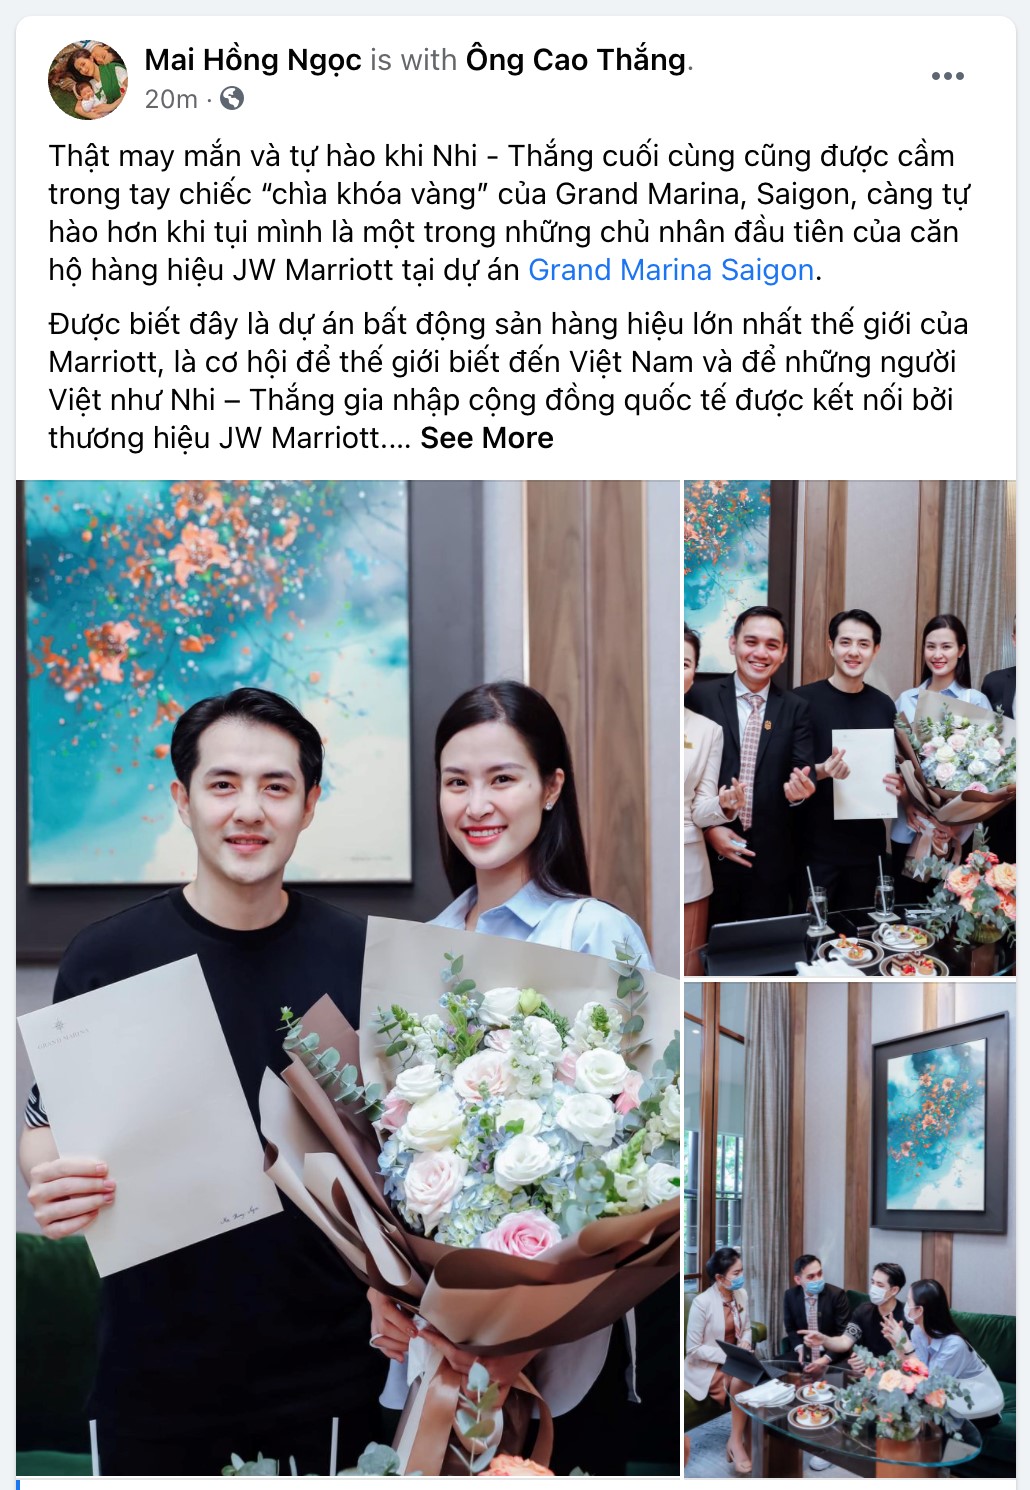 Đông Nhi & Ông Cao Thắng “sắm” căn hộ hàng hiệu JW Marriott giá trị triệu đô